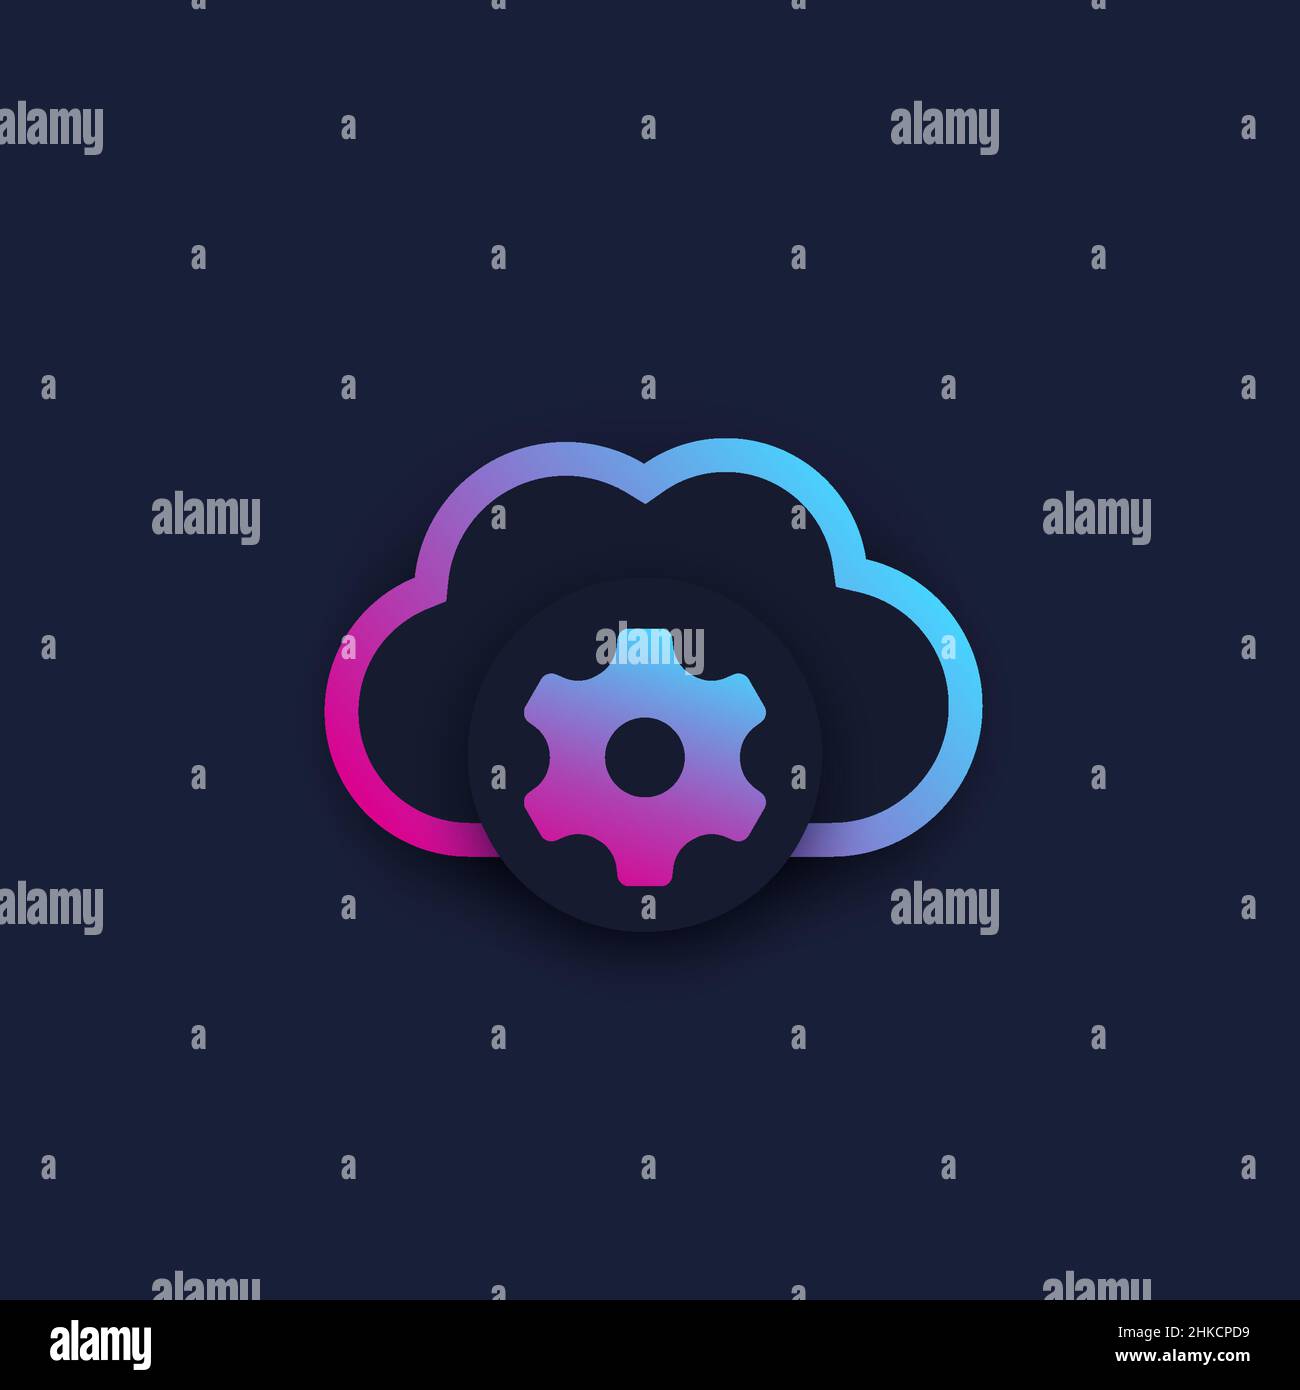 cloud computing logo design, vector Stock Vector